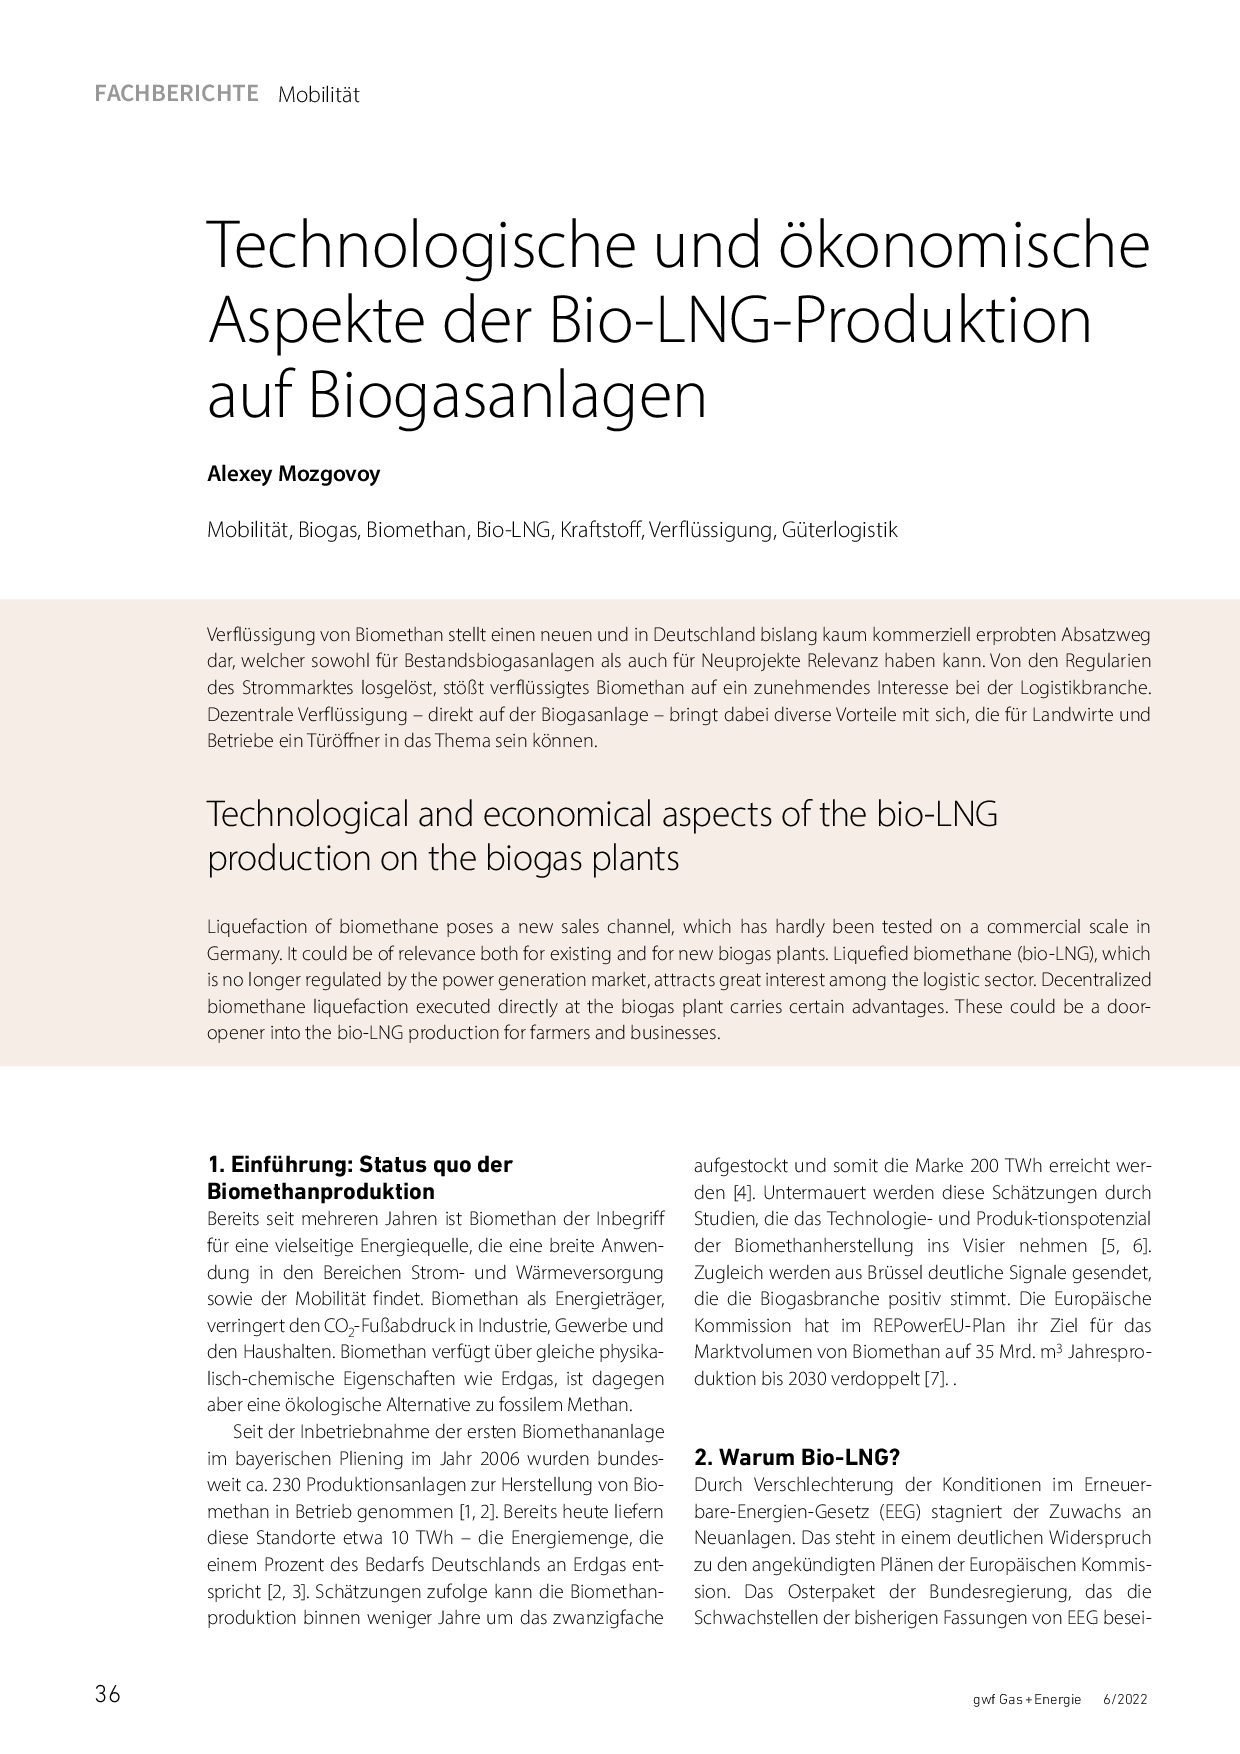 Technologische und ökonomische Aspekte der Bio-LNG-Produktion auf Biogasanlagen